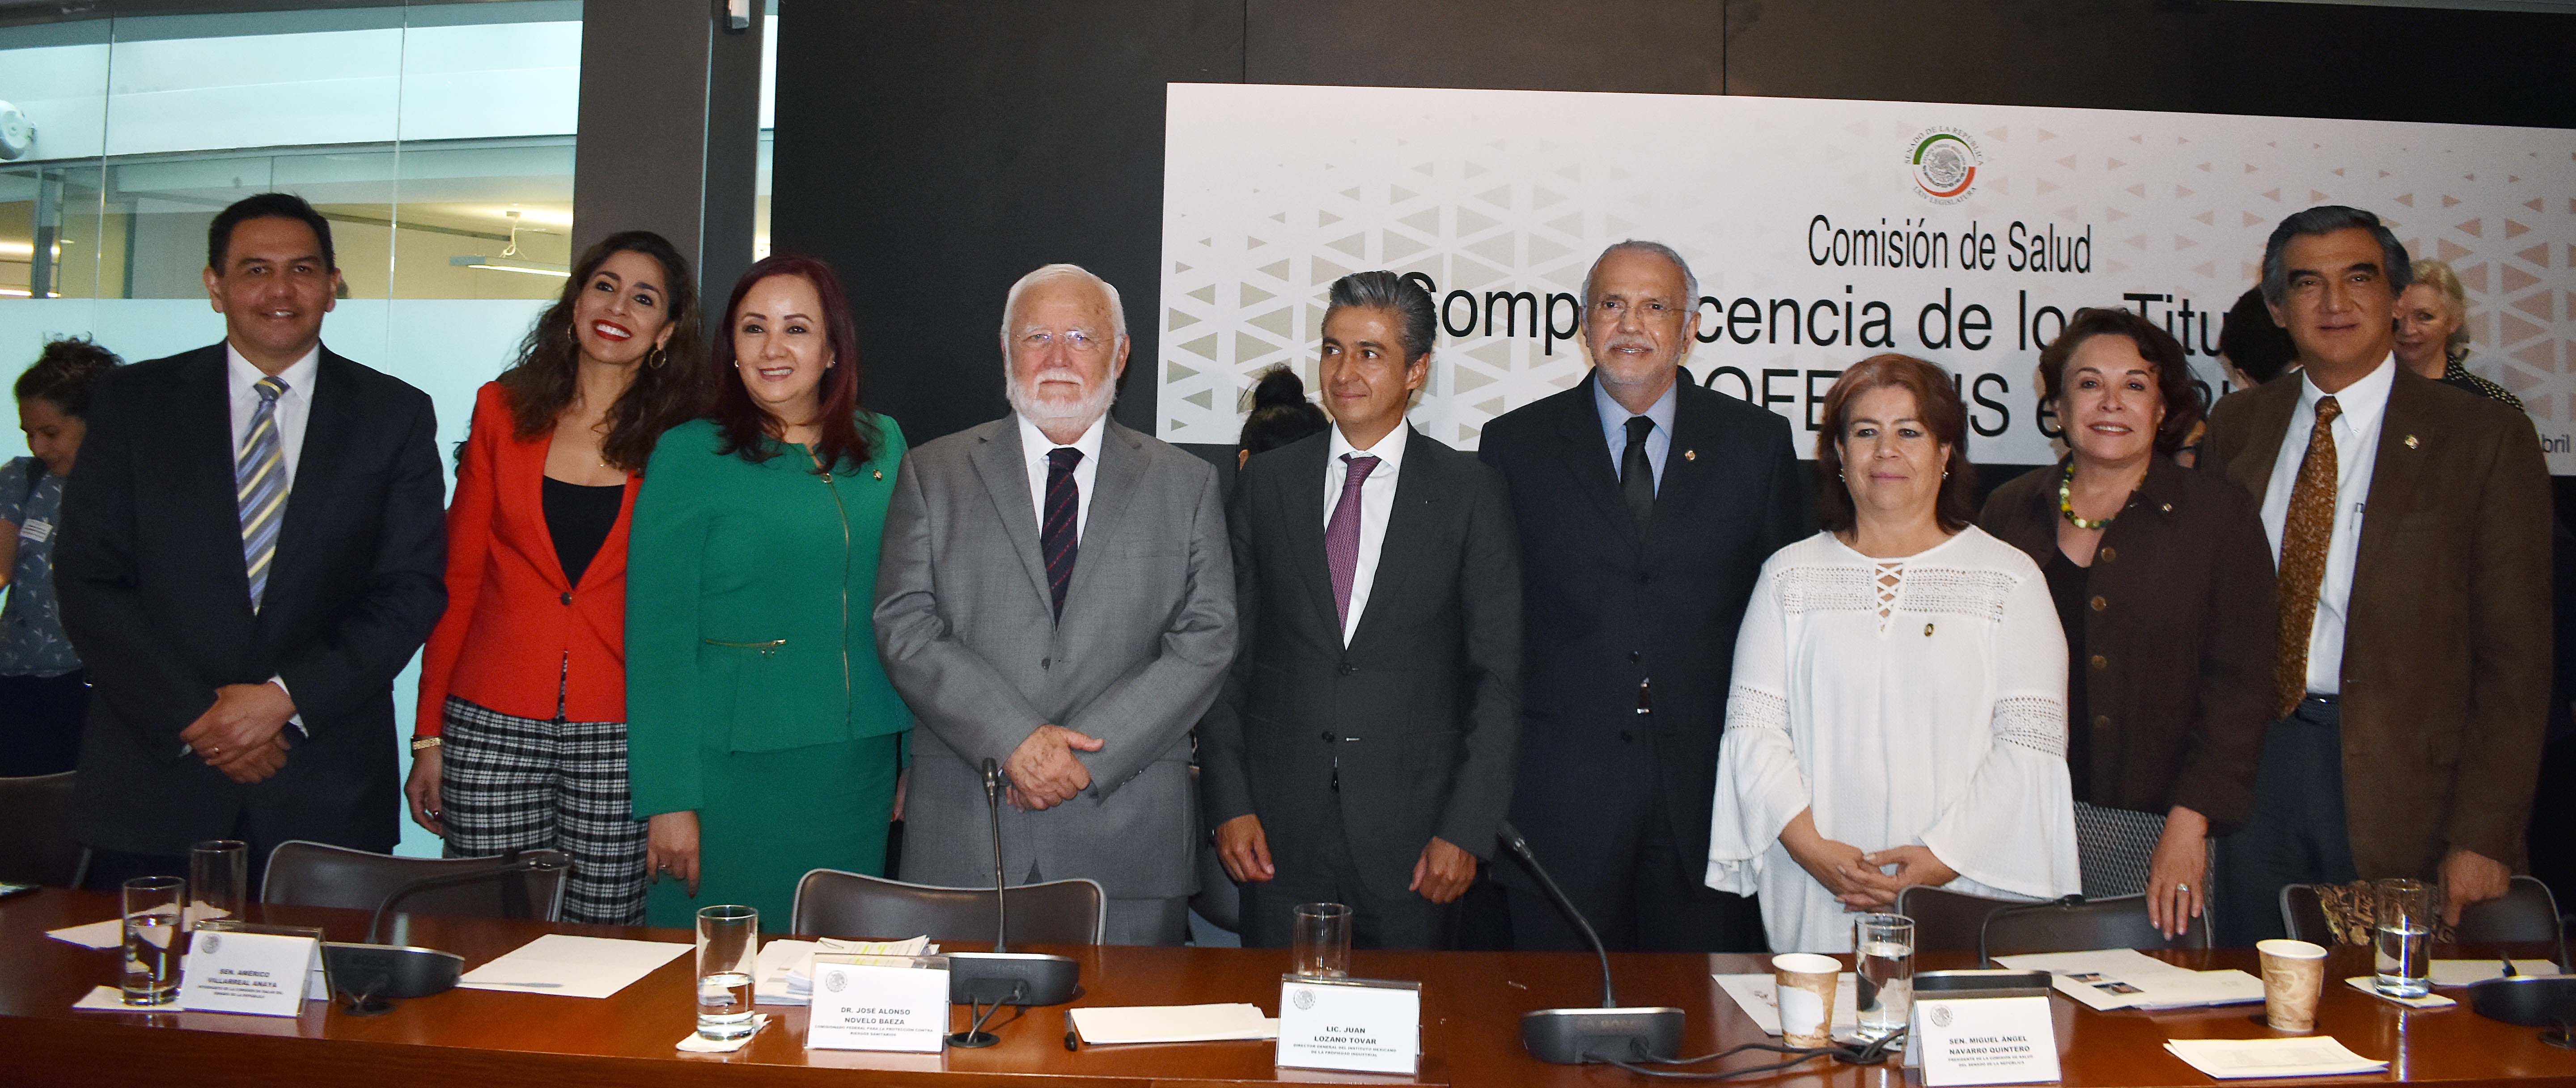 Foto grupal de los funcionarios de la Comisión Nacional de Salud y la Secretaría de Salud y Cofepris.